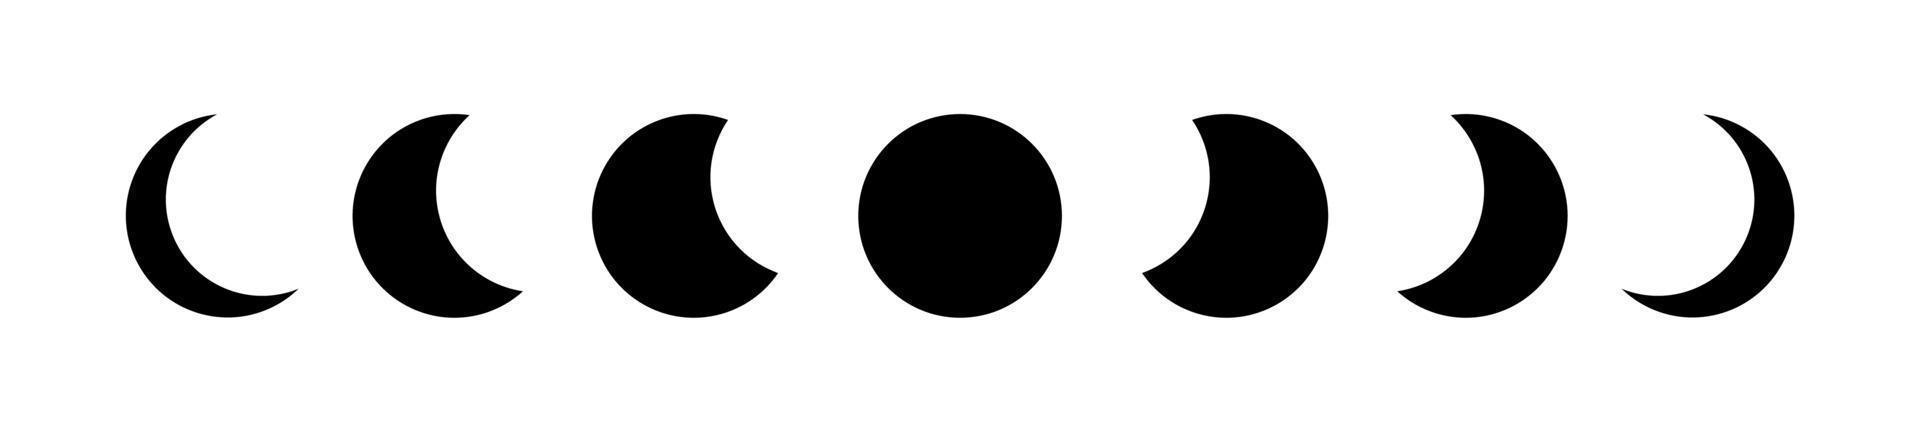 maanstanden zwarte rand frame, wicca banner teken. drievoudige maan heidense Wicca godin symbool, heilige geometrie, wiel van het jaar, vector geïsoleerd op een witte achtergrond